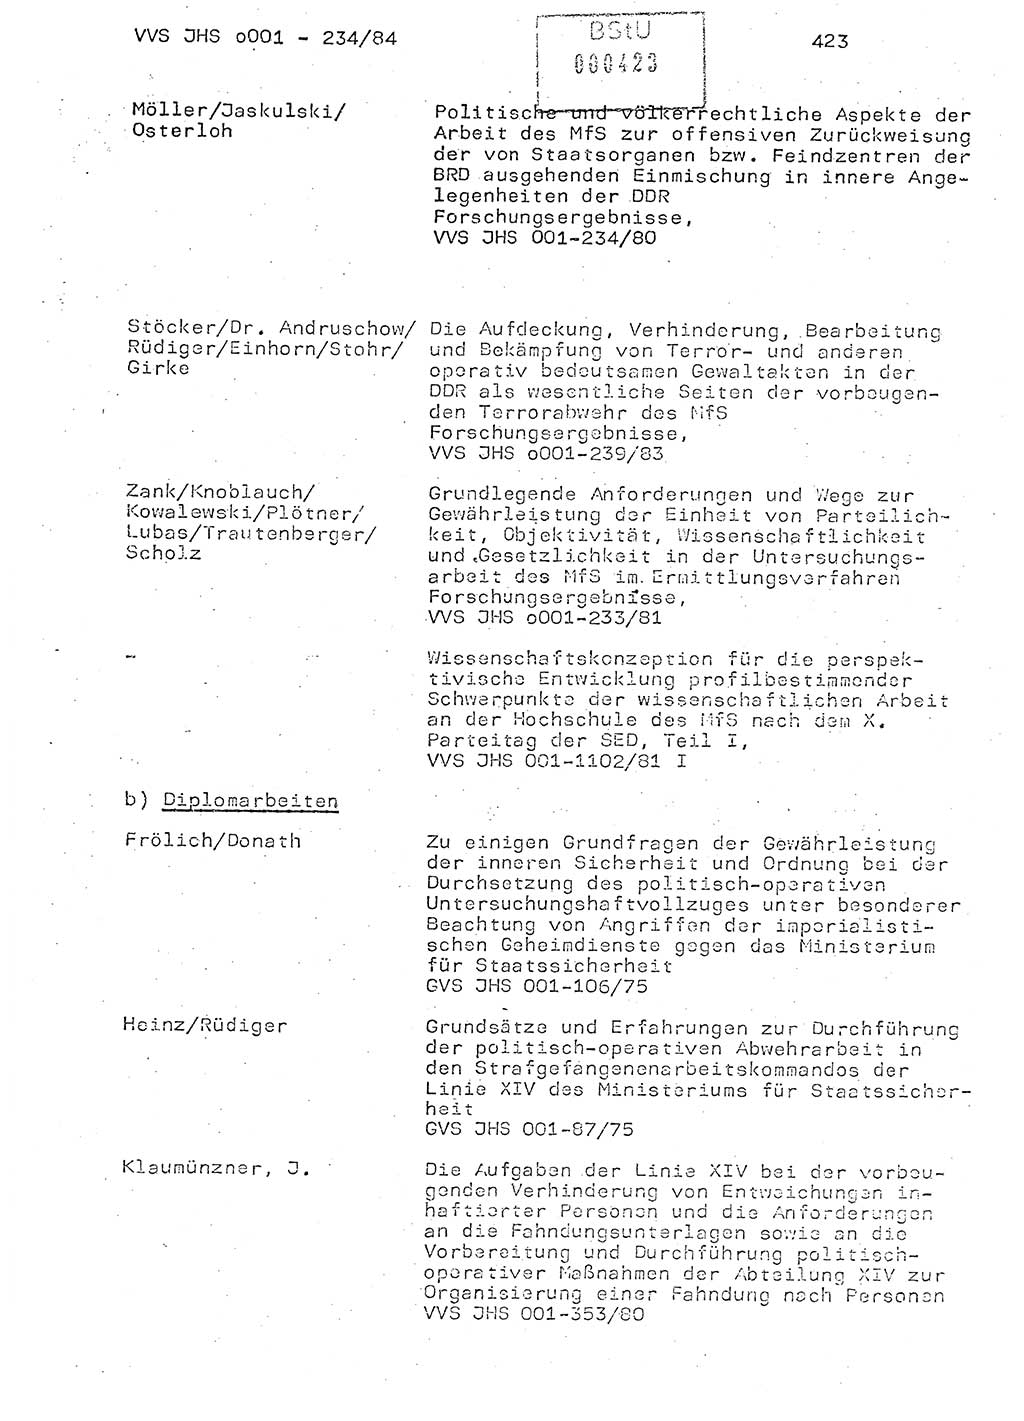 Dissertation Oberst Siegfried Rataizick (Abt. ⅩⅣ), Oberstleutnant Volkmar Heinz (Abt. ⅩⅣ), Oberstleutnant Werner Stein (HA Ⅸ), Hauptmann Heinz Conrad (JHS), Ministerium für Staatssicherheit (MfS) [Deutsche Demokratische Republik (DDR)], Juristische Hochschule (JHS), Vertrauliche Verschlußsache (VVS) o001-234/84, Potsdam 1984, Seite 423 (Diss. MfS DDR JHS VVS o001-234/84 1984, S. 423)